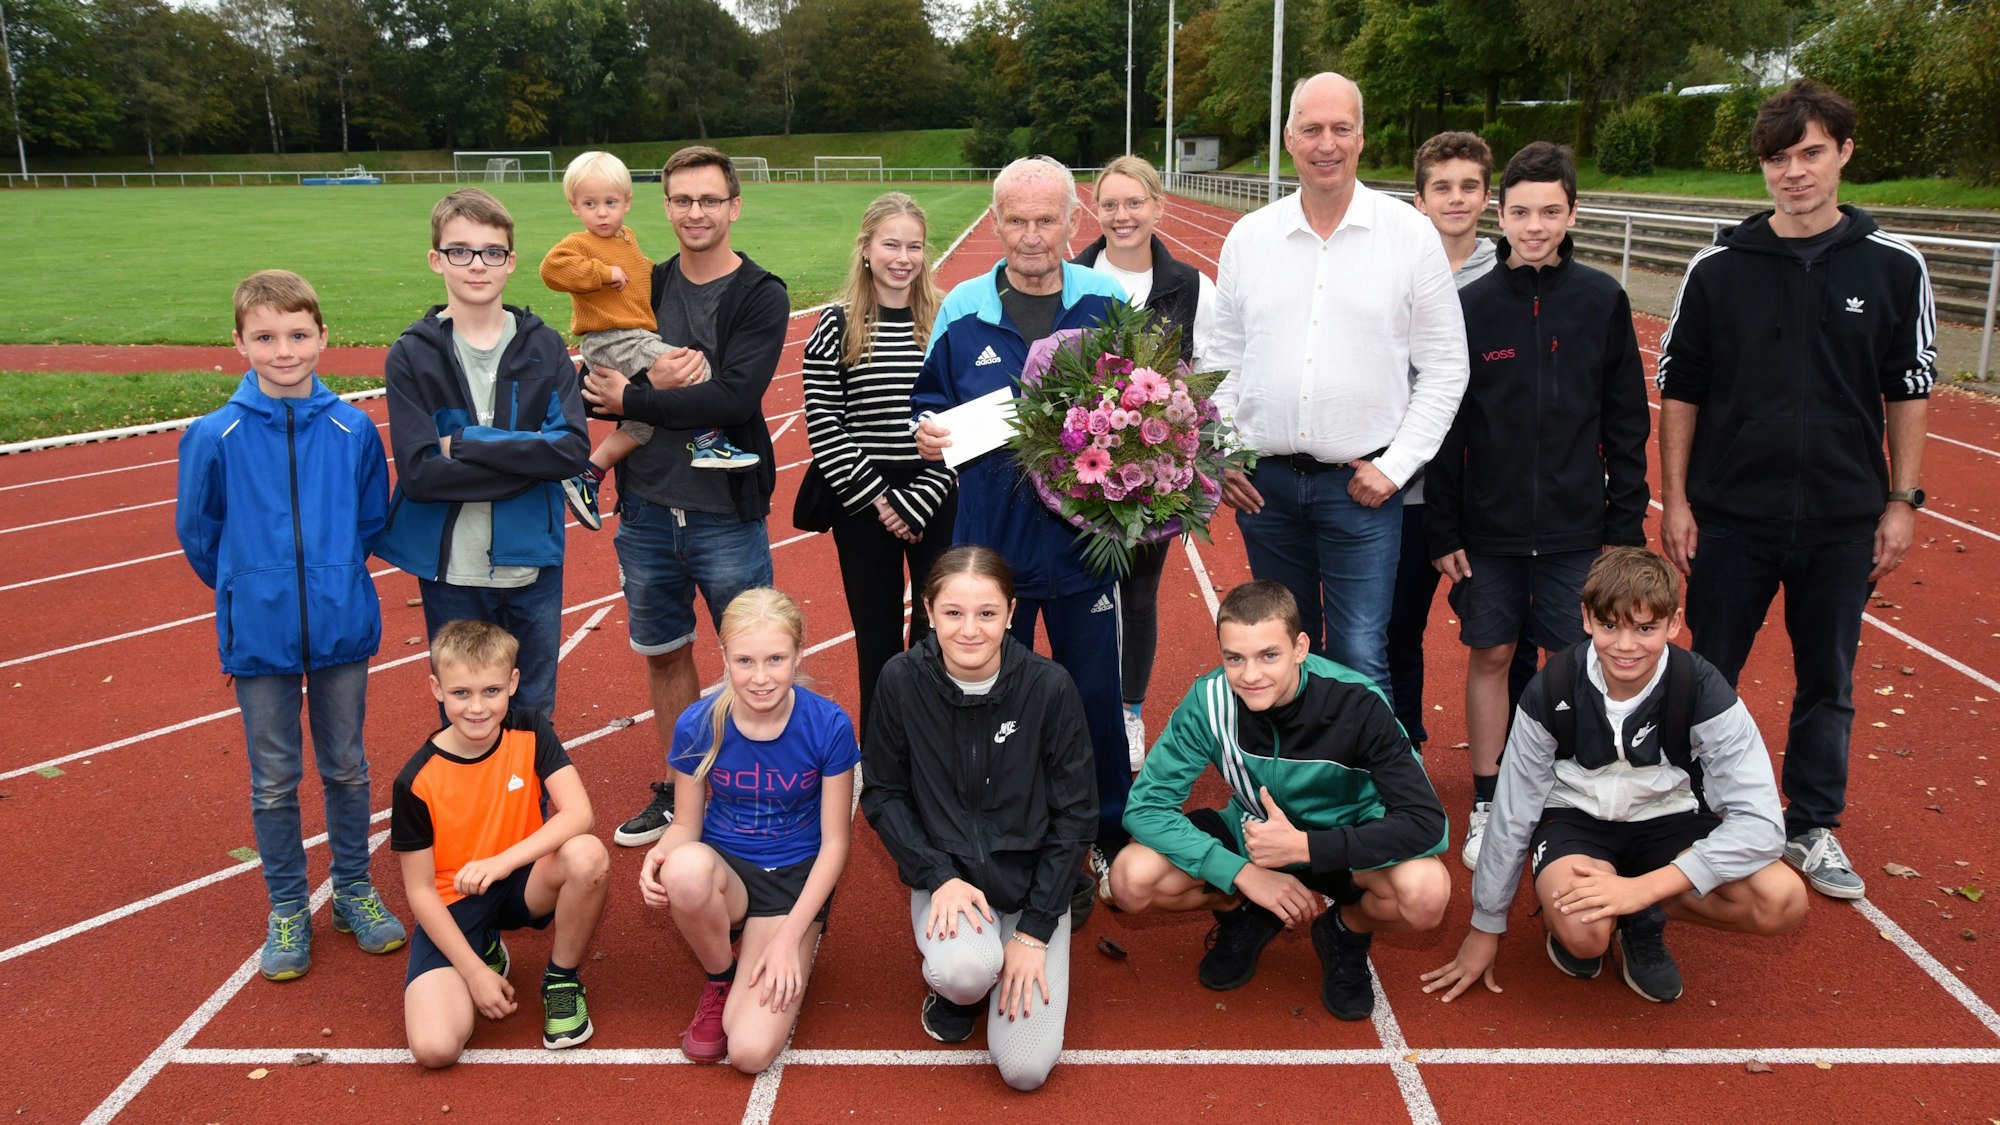 Kinder und weitere Sportler auf einer Laufbahn mit Oswald Pankalla, der einen Blumenstrauß in der Hand hält.